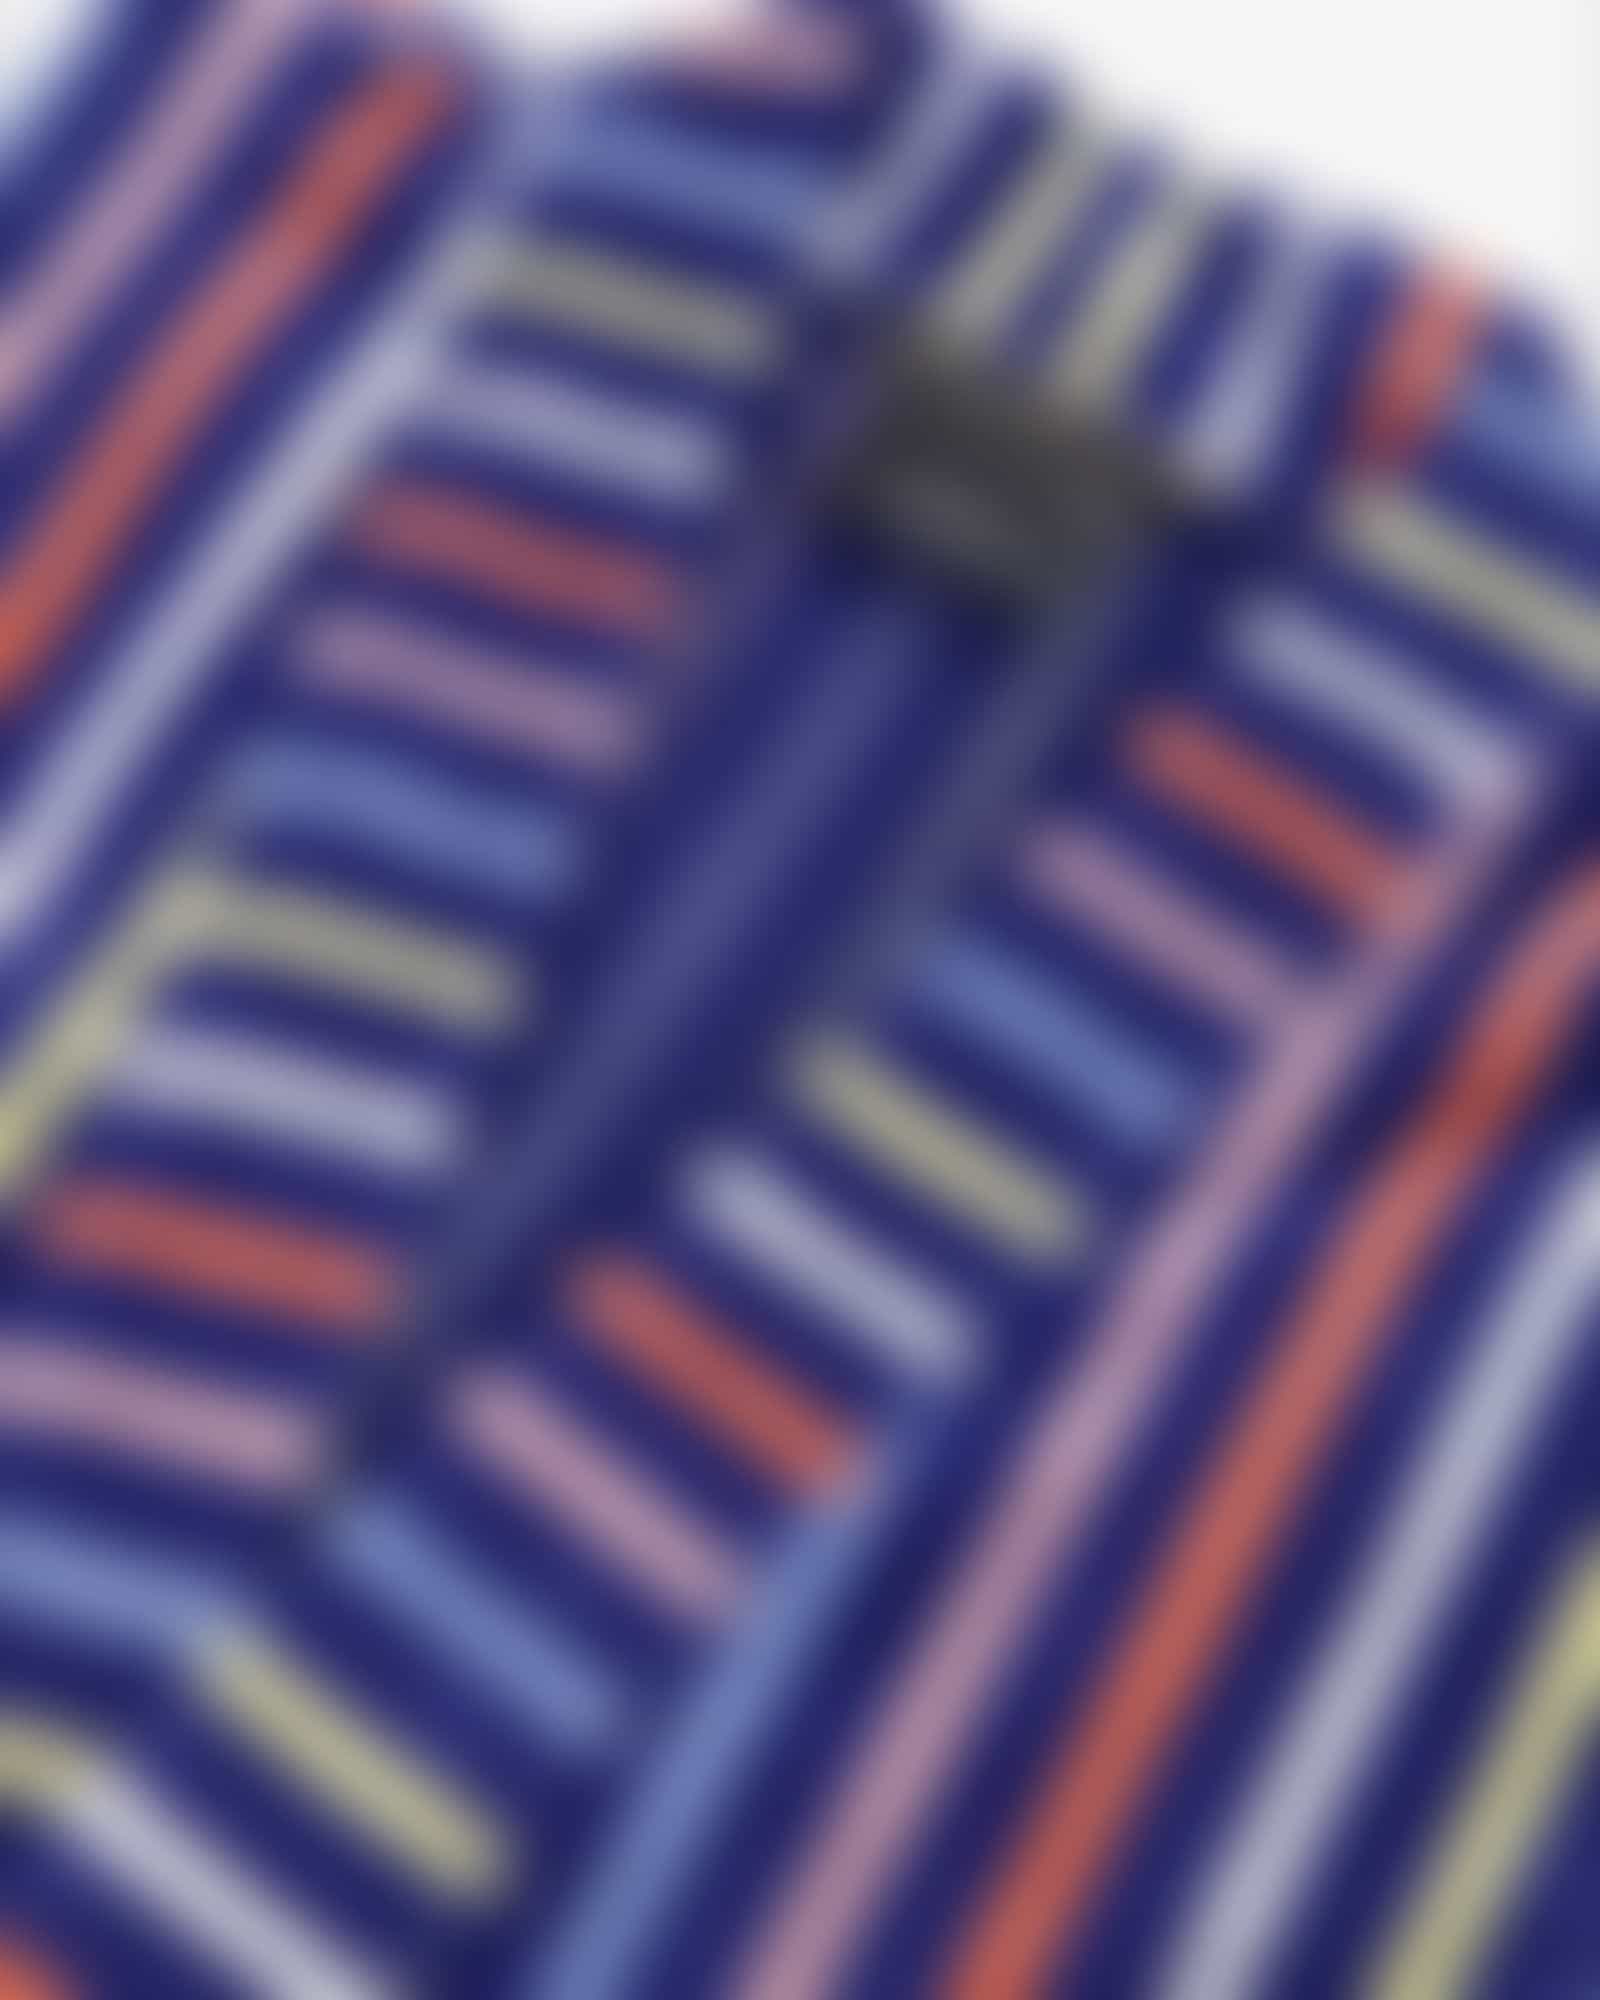 Cawö Damen Bademantel Kimono 3343 - Farbe: blau-multicolor - 12 - L Detailbild 1